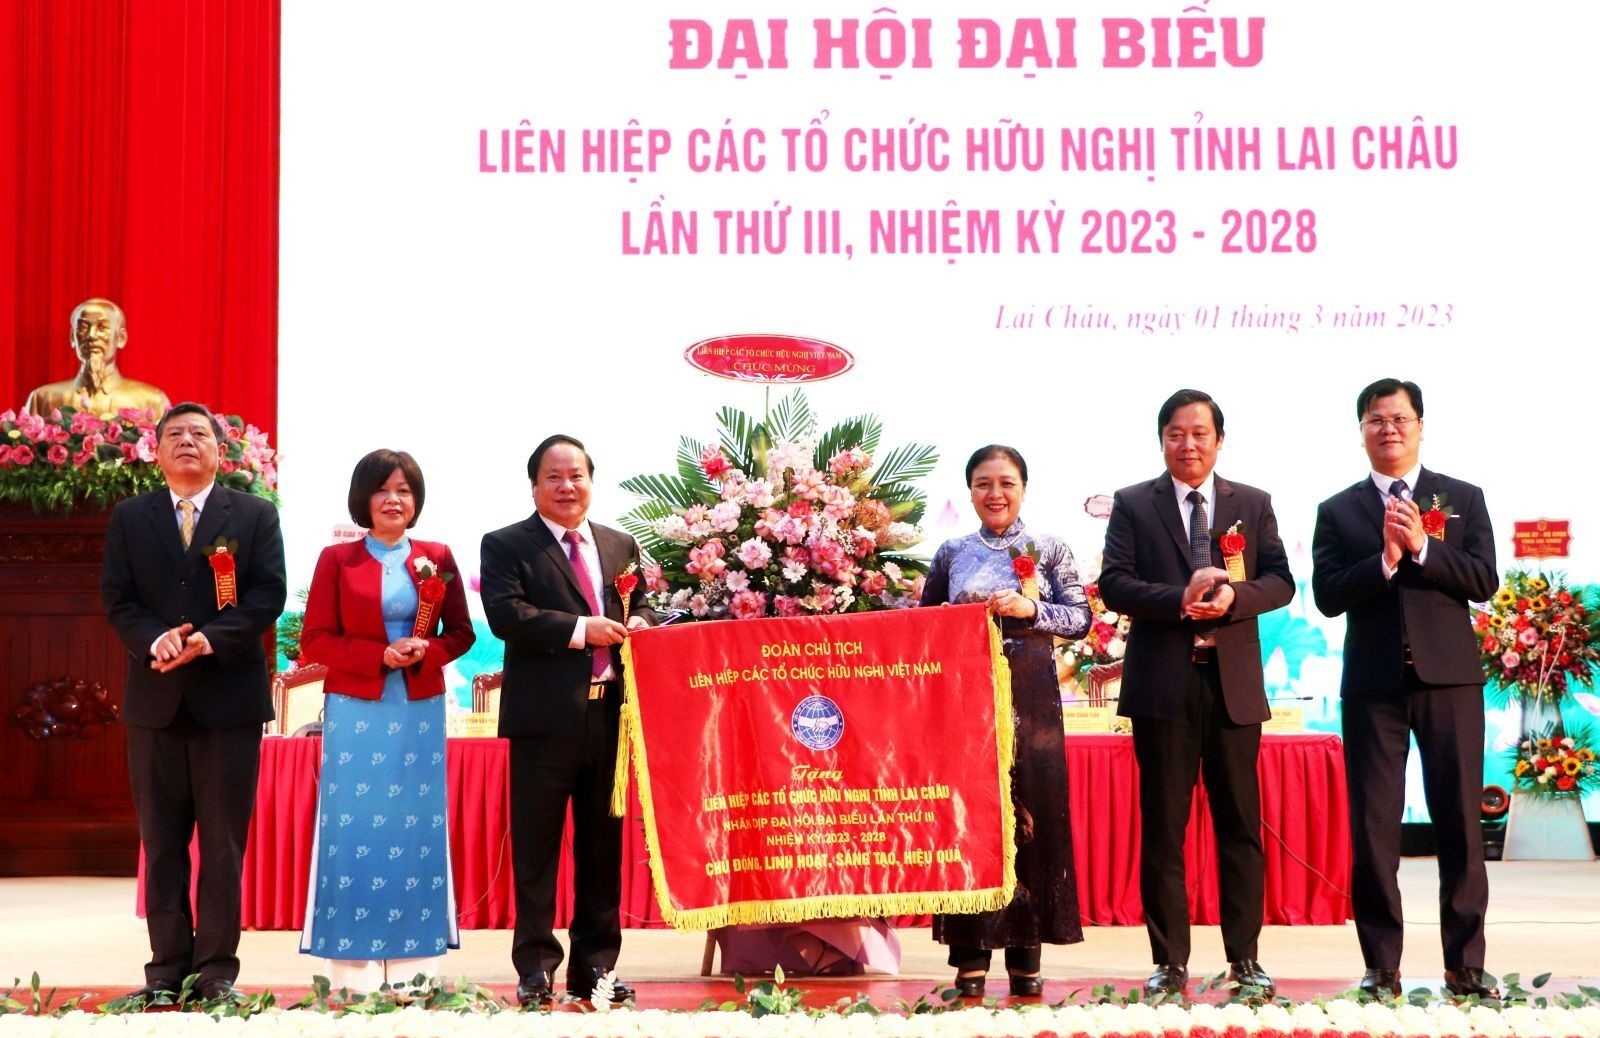 越南友好组织联合会向2名个人颁发了“致力于各民族之间的和平和友谊”勋章，并向1名个人颁发了奖状。